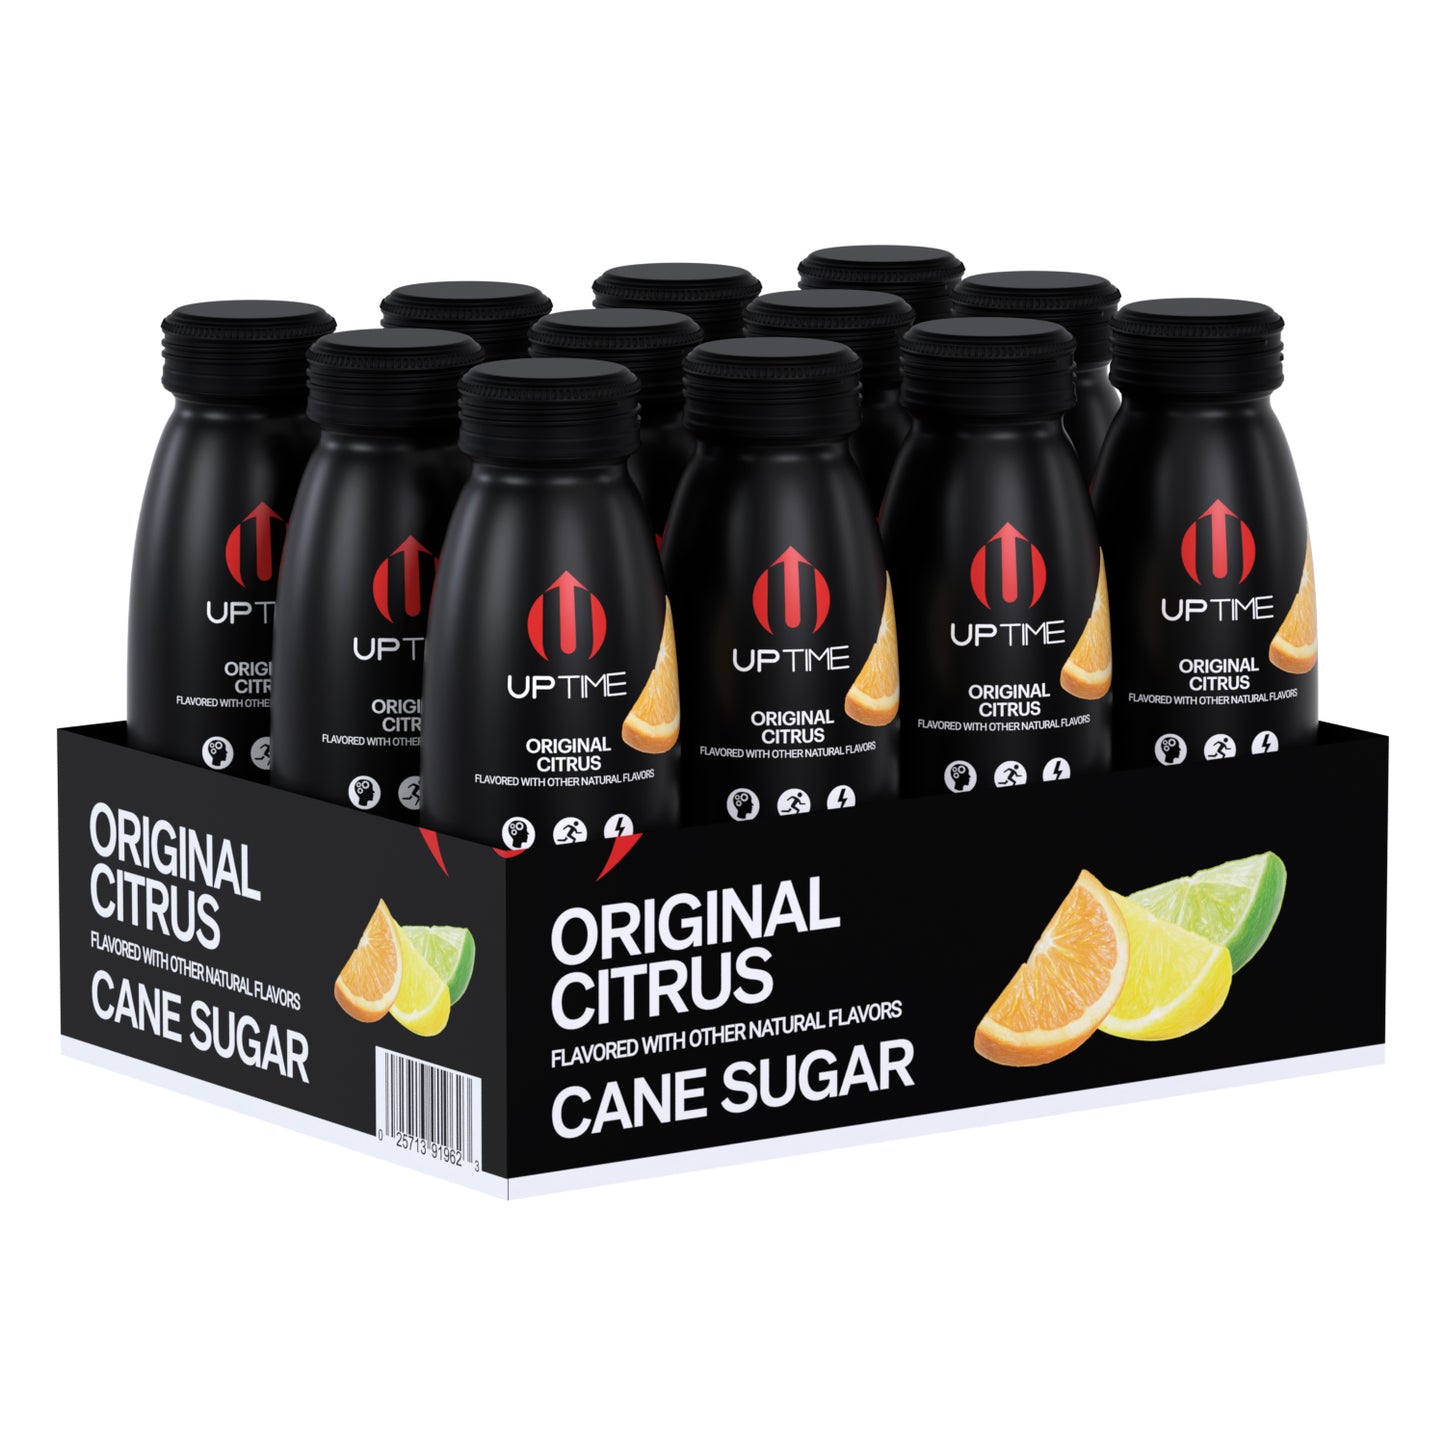 Original Citrus Cane Sugar 12 Pack